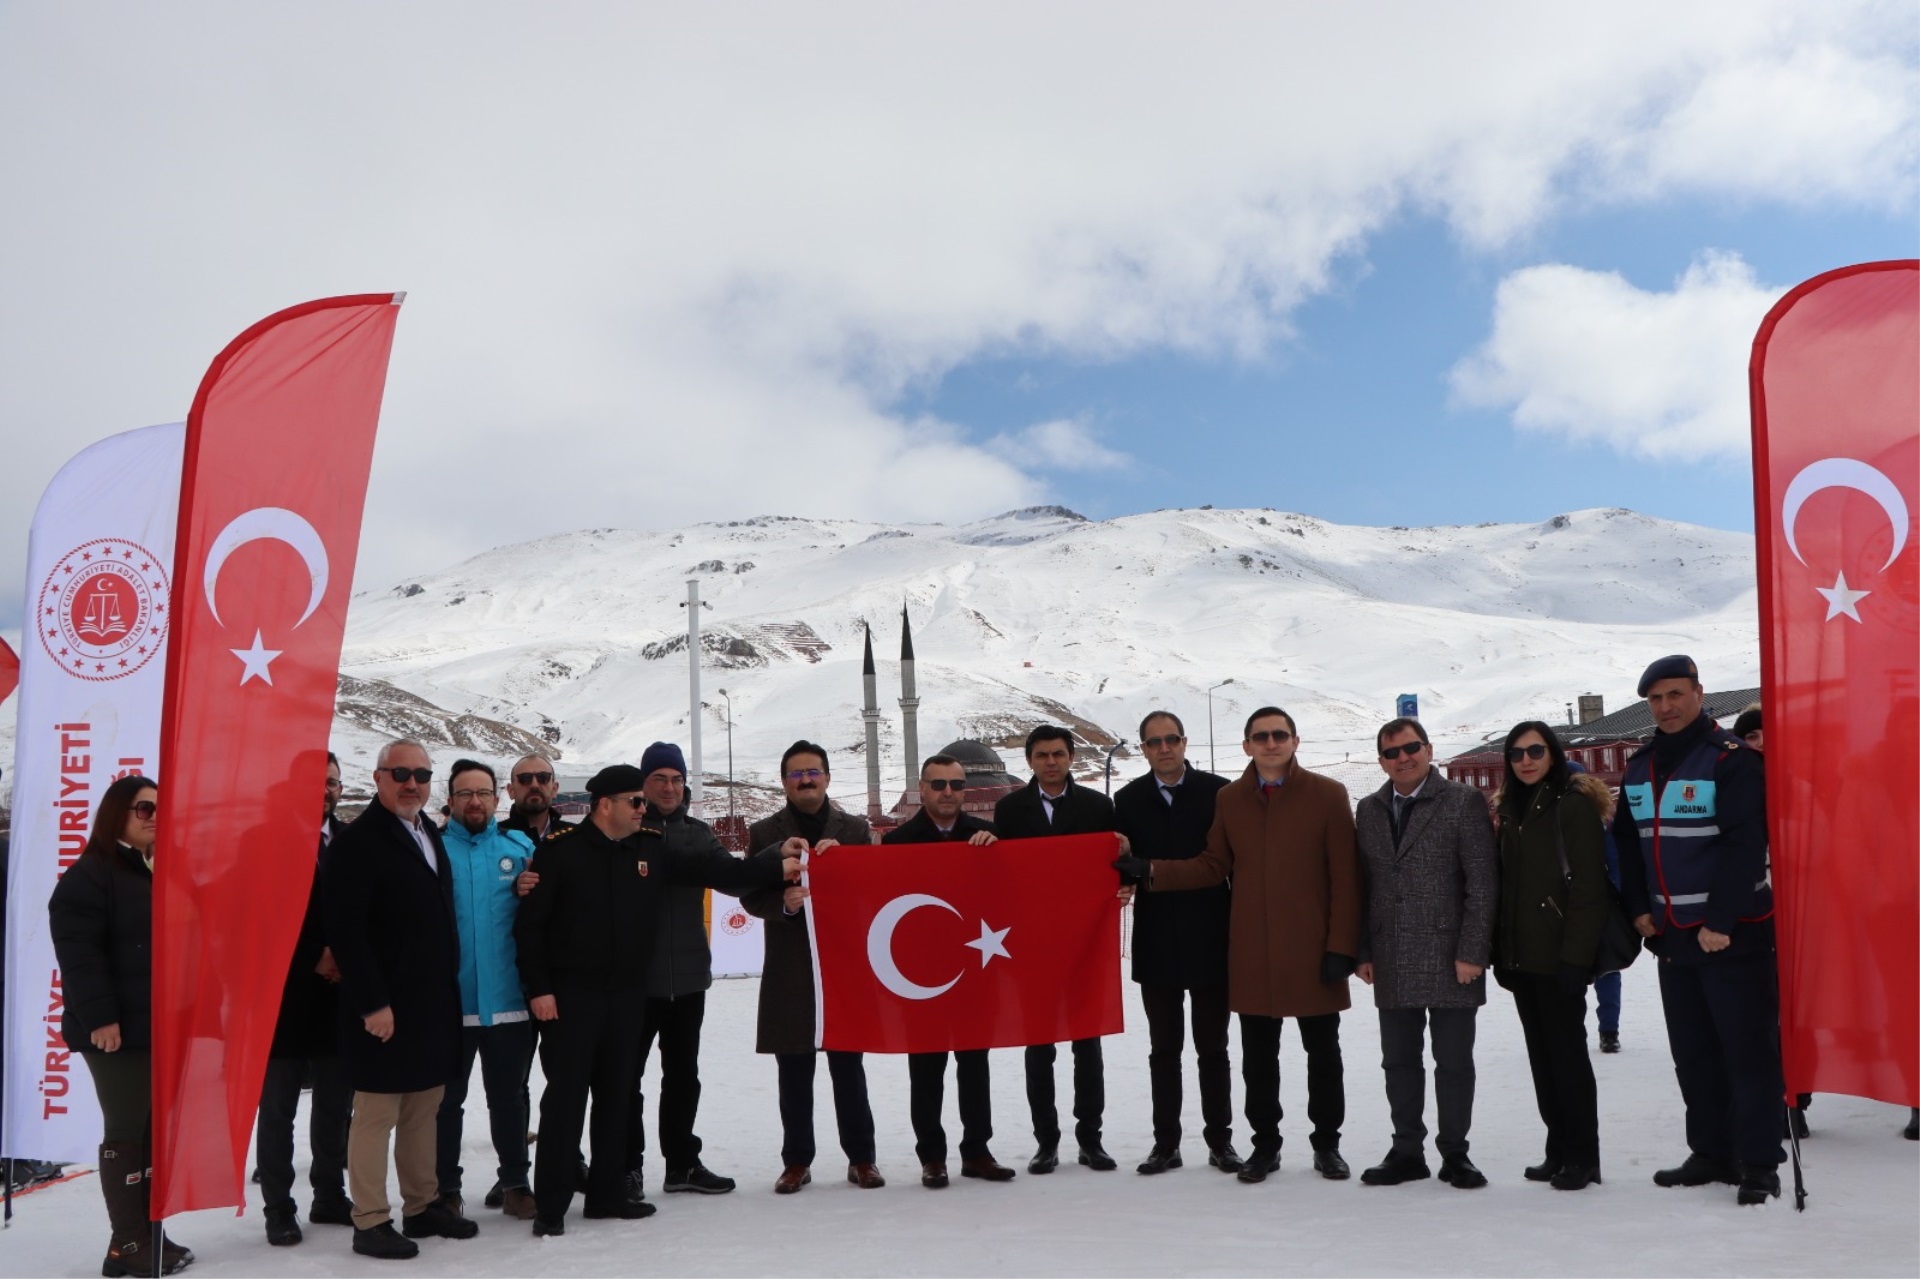 Abdullah Gül Üniversitesi ve Gençlik ve Spor İl Müdürlüğünün ortak düzenlemiş olduğu proje kapsamında Kayseri Kadın Kapalı Ceza infaz kurumunda annelerinin yanında kalan çocukları Erciyes’te kayak eğitimi